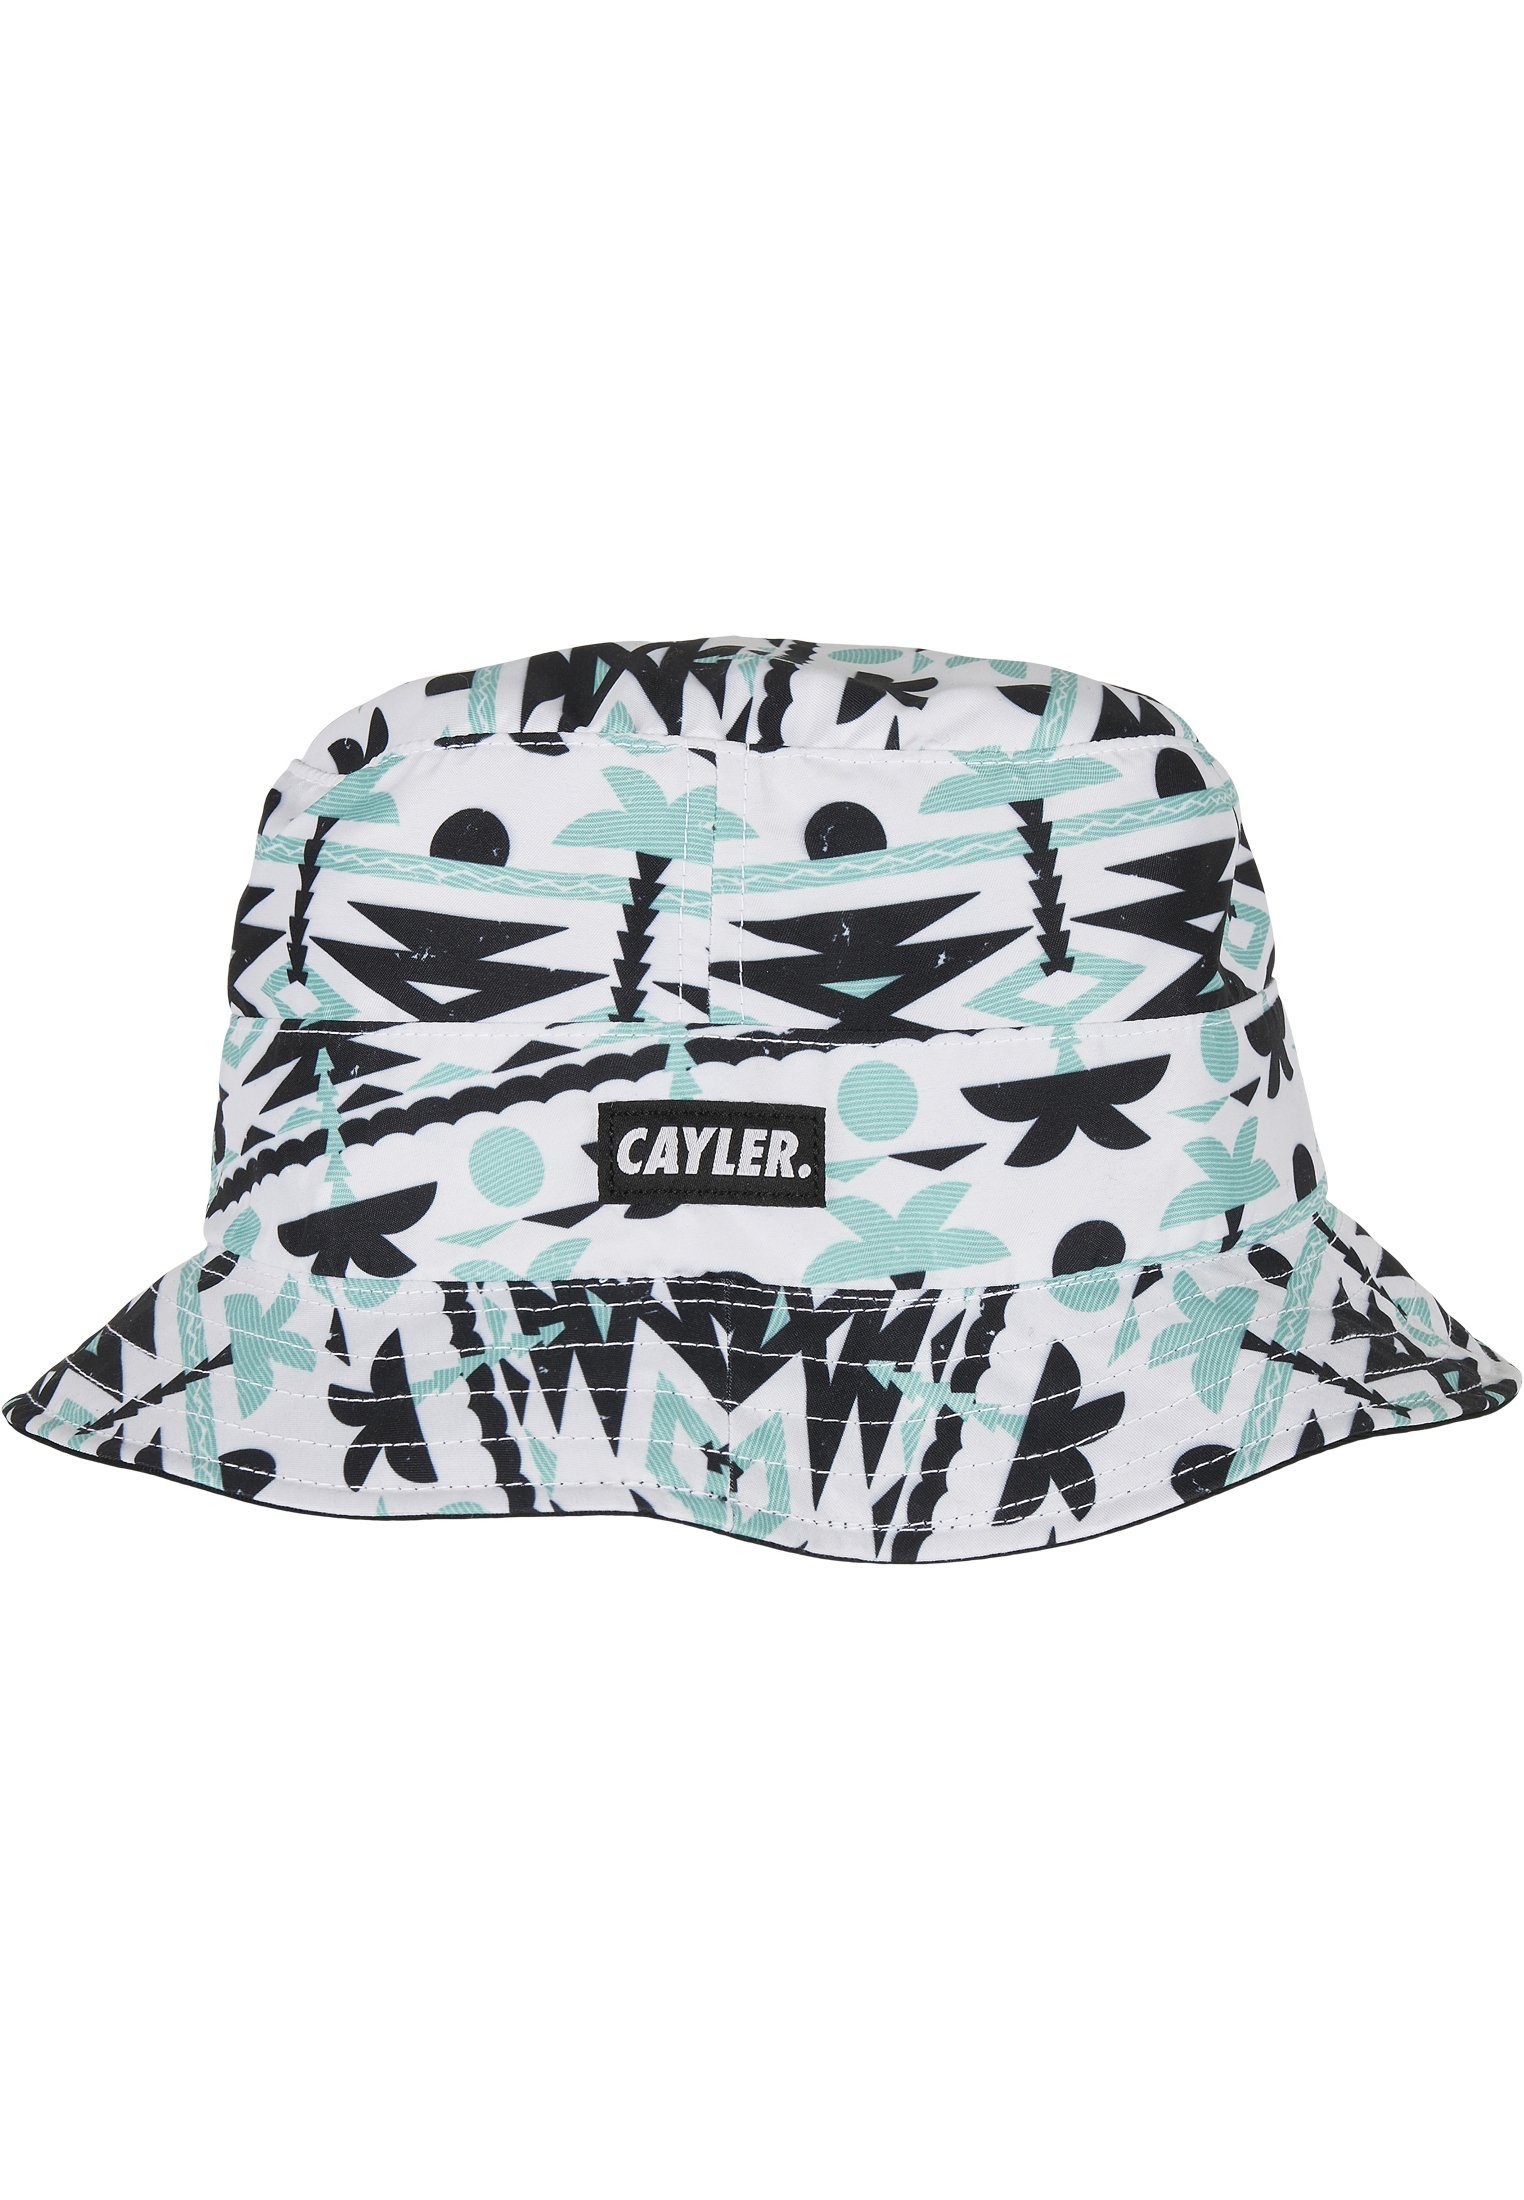 WL & Cap Reversible Bucket C&S CAYLER SONS Hat Flex Summer Aztec